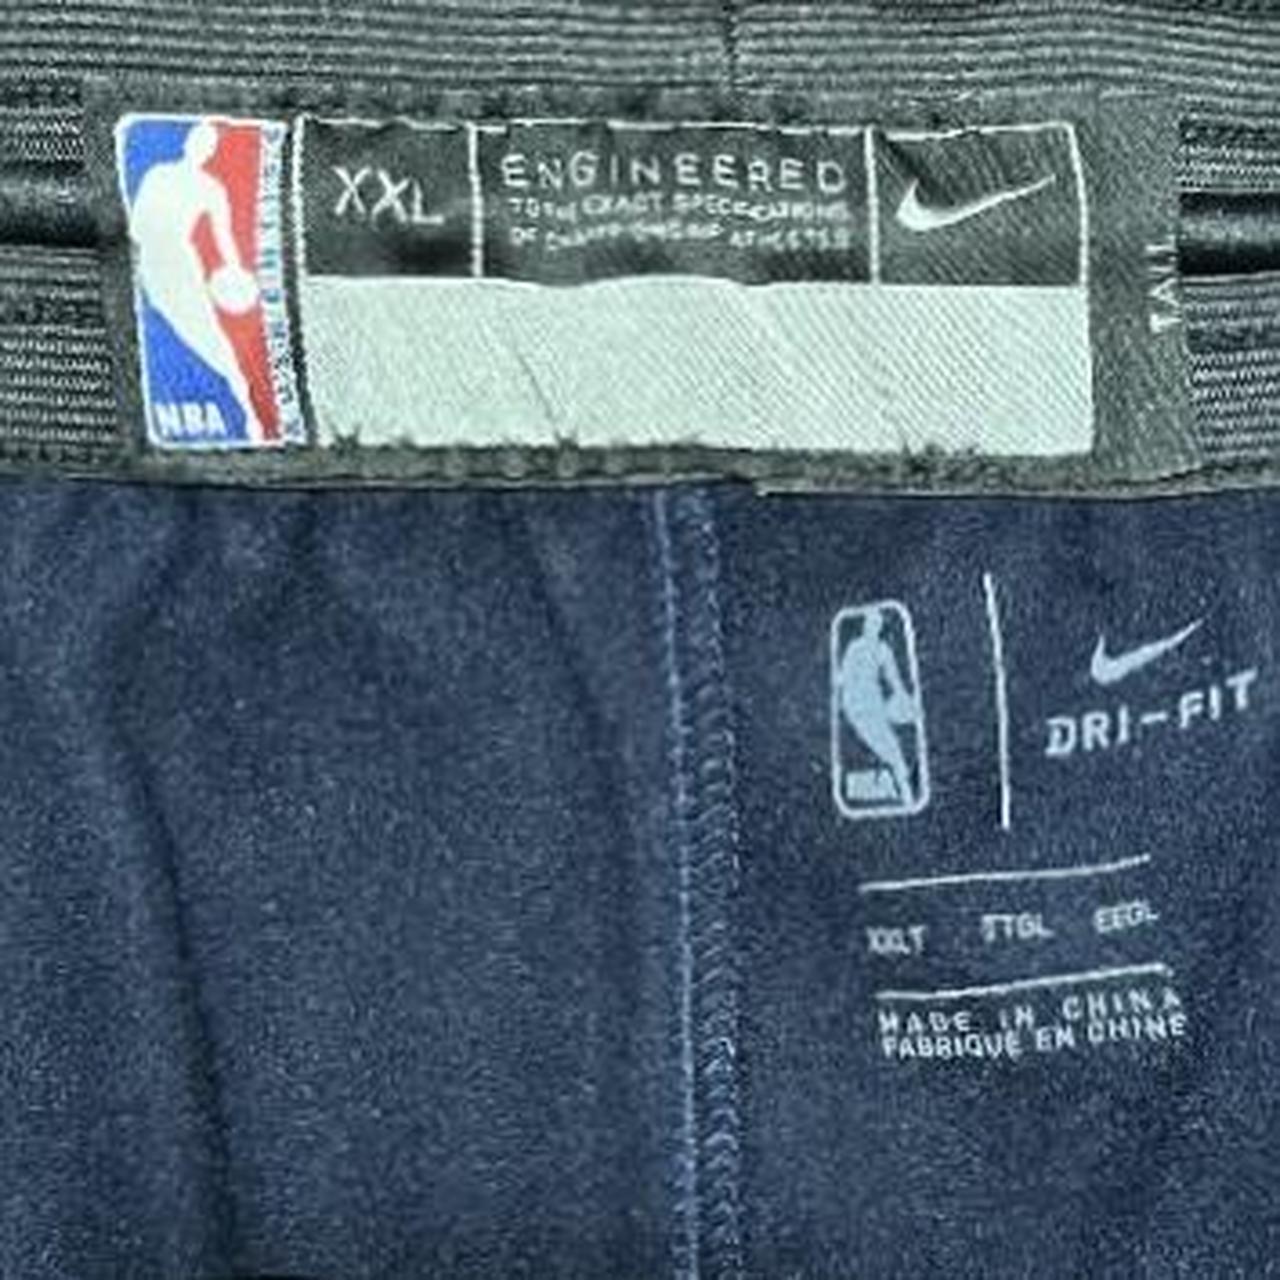 Nike NBA Basketball Warm Up Pants XXLT 2XL Tall - Depop